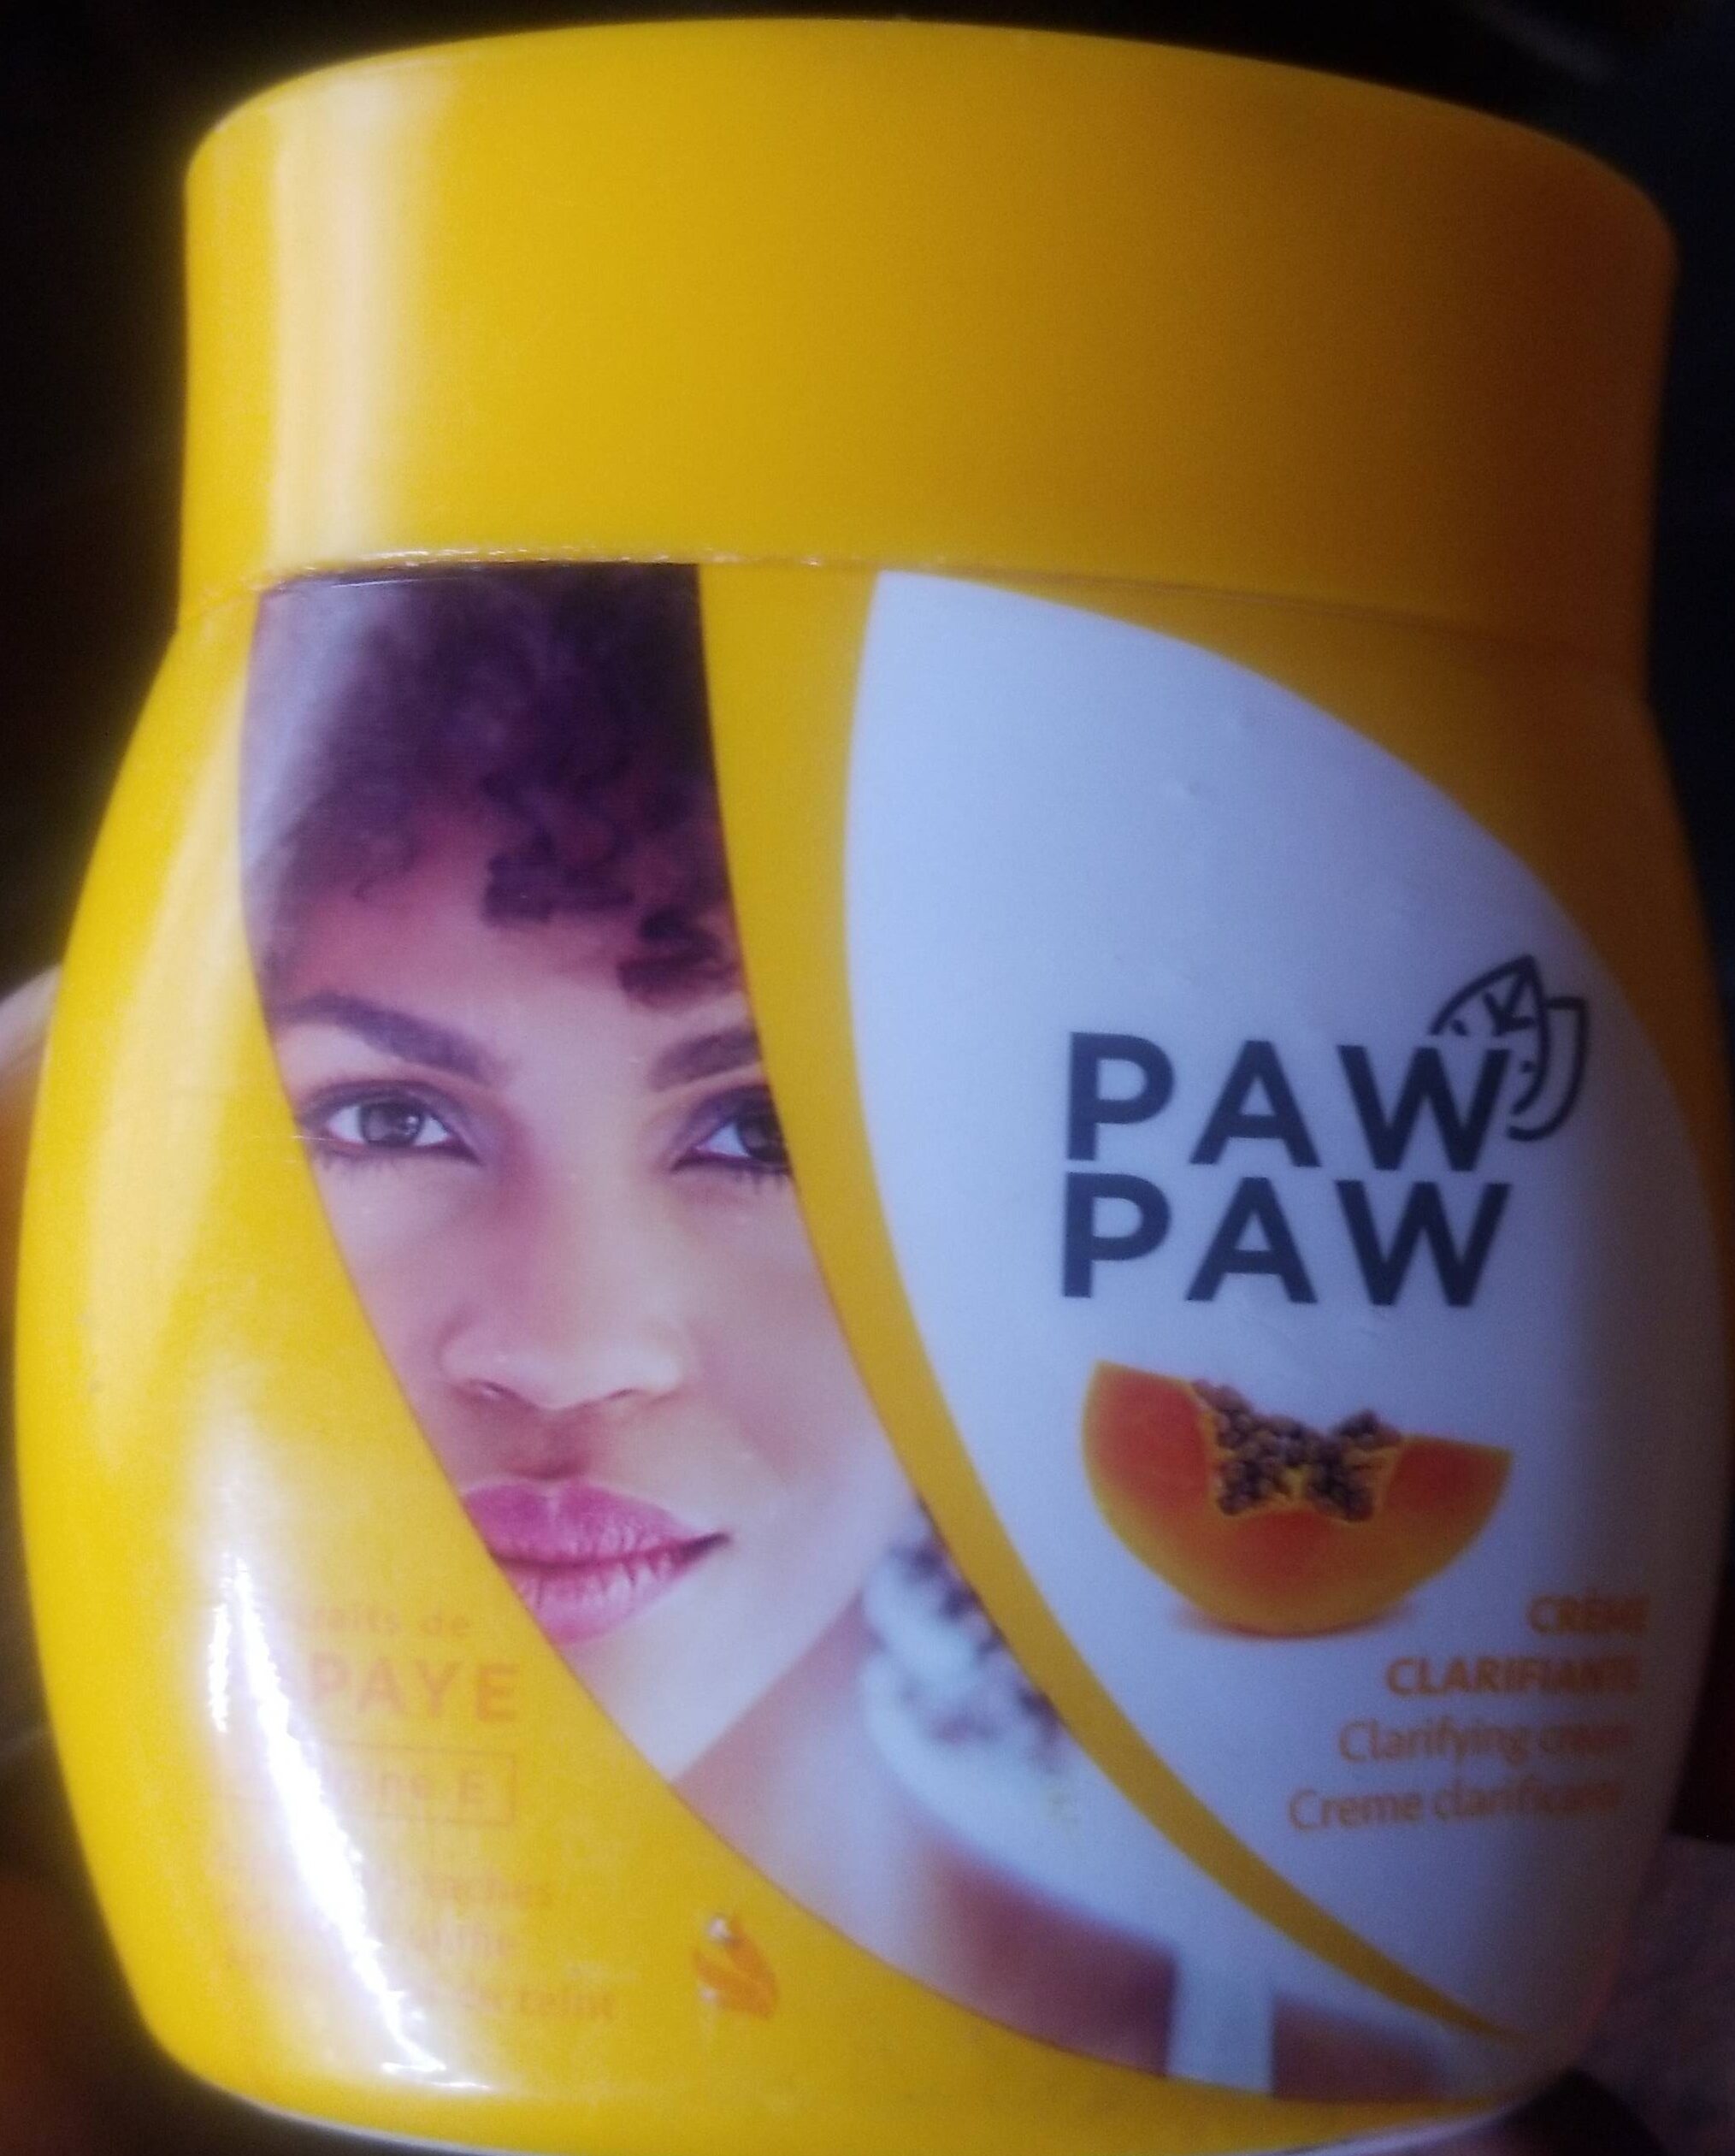 Paw paw - Produkt - en